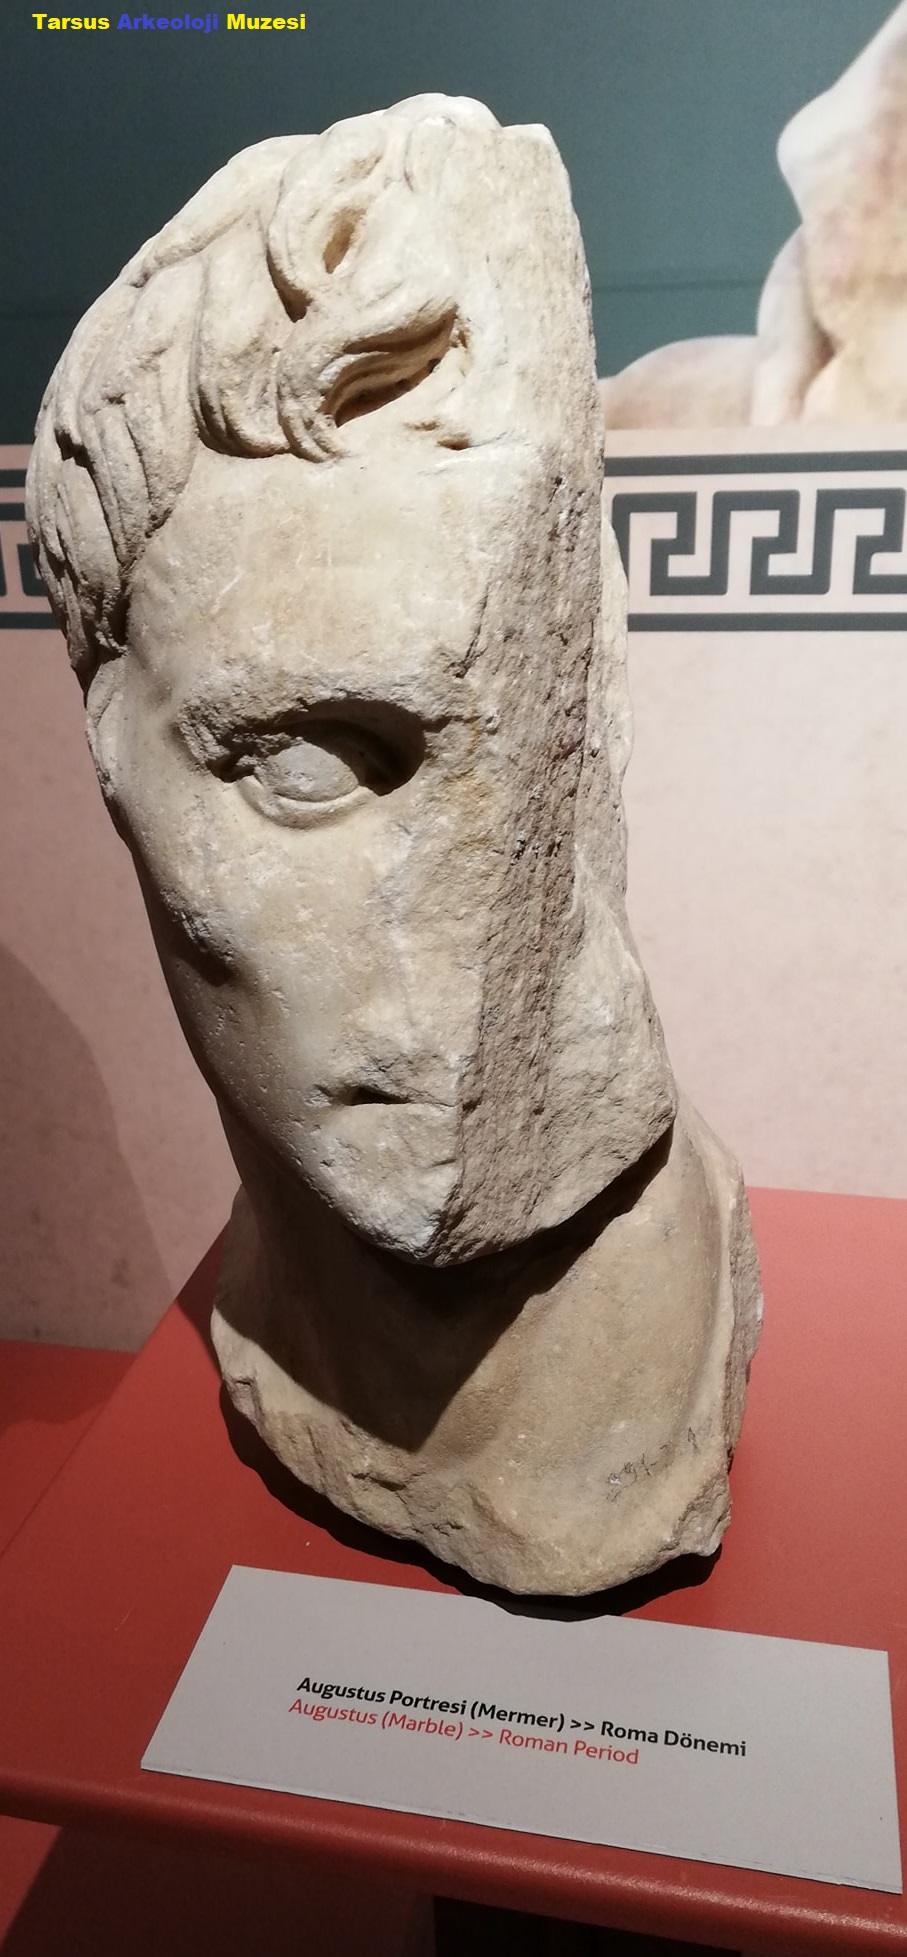 Augustus Portresi , mermer , Roma dönemi Tarsus Arkeoloji Müzesi